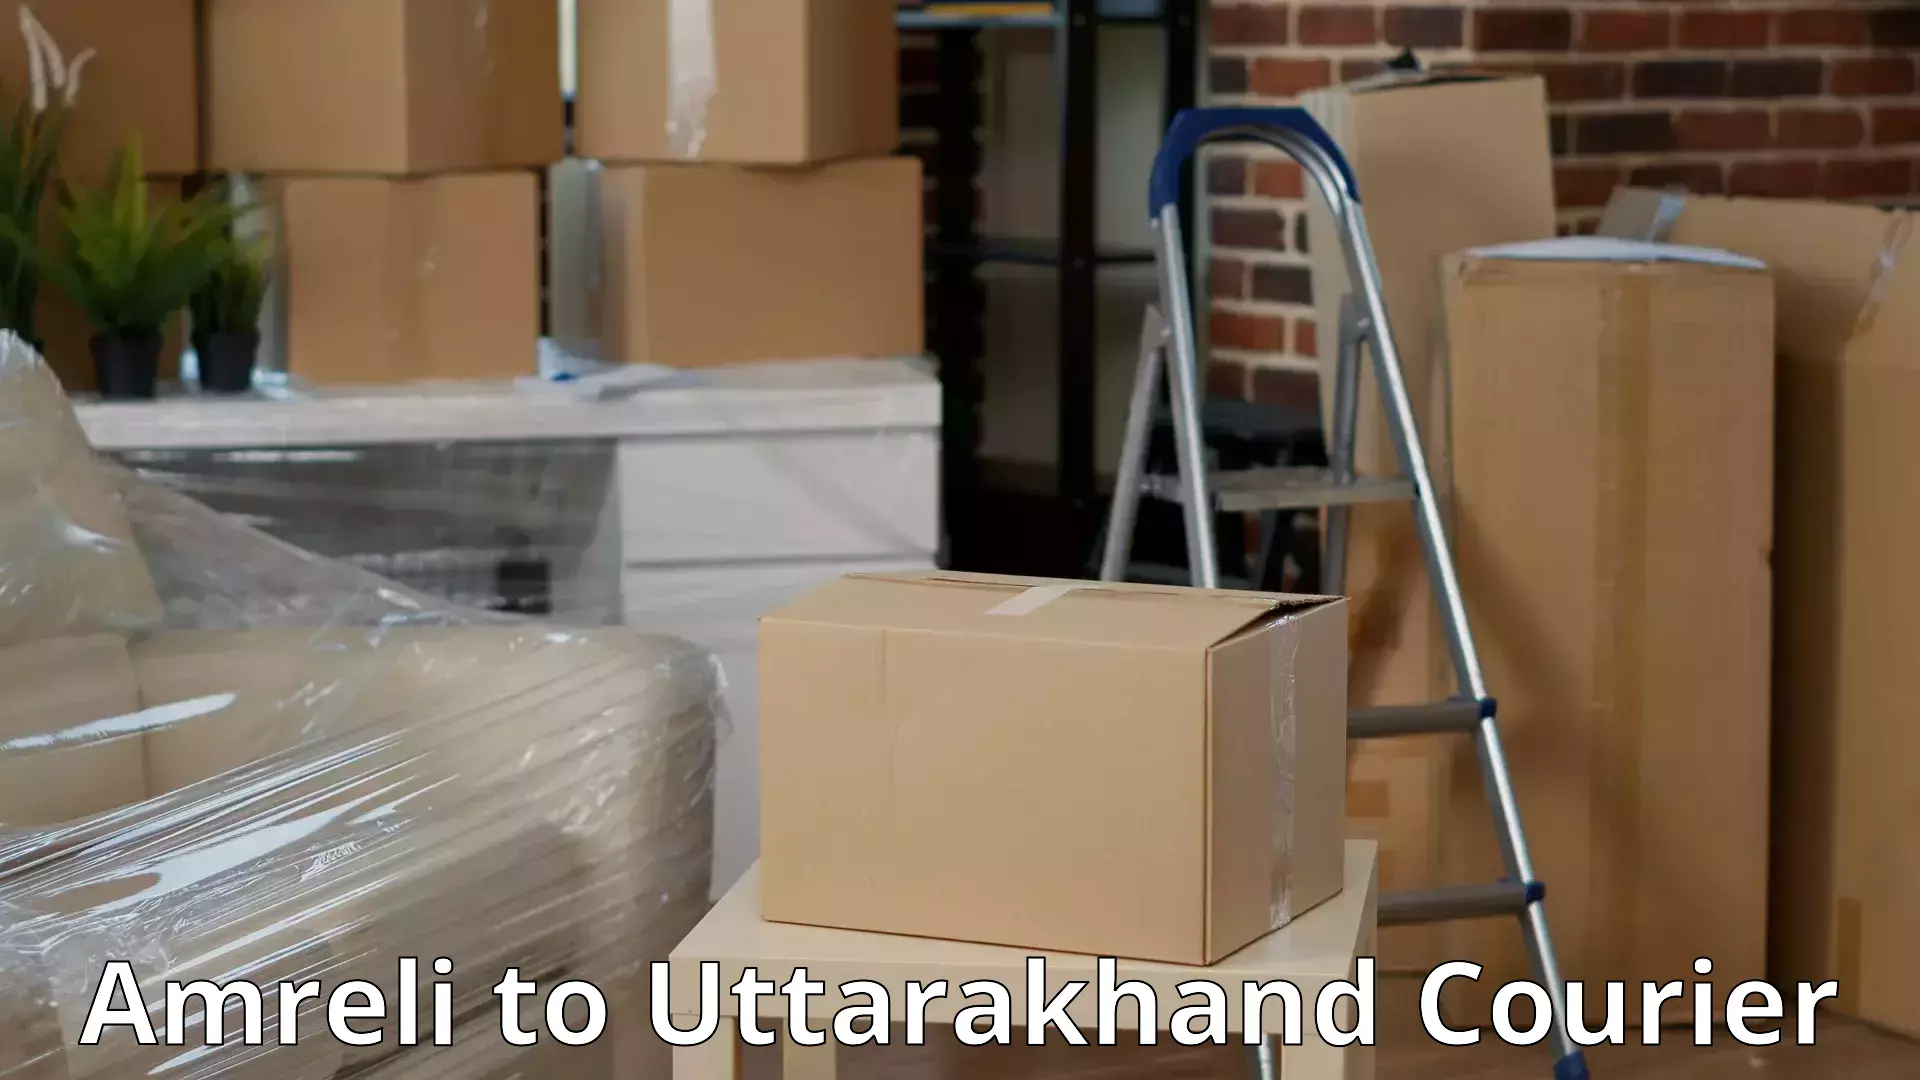 Full-service movers Amreli to Uttarakhand